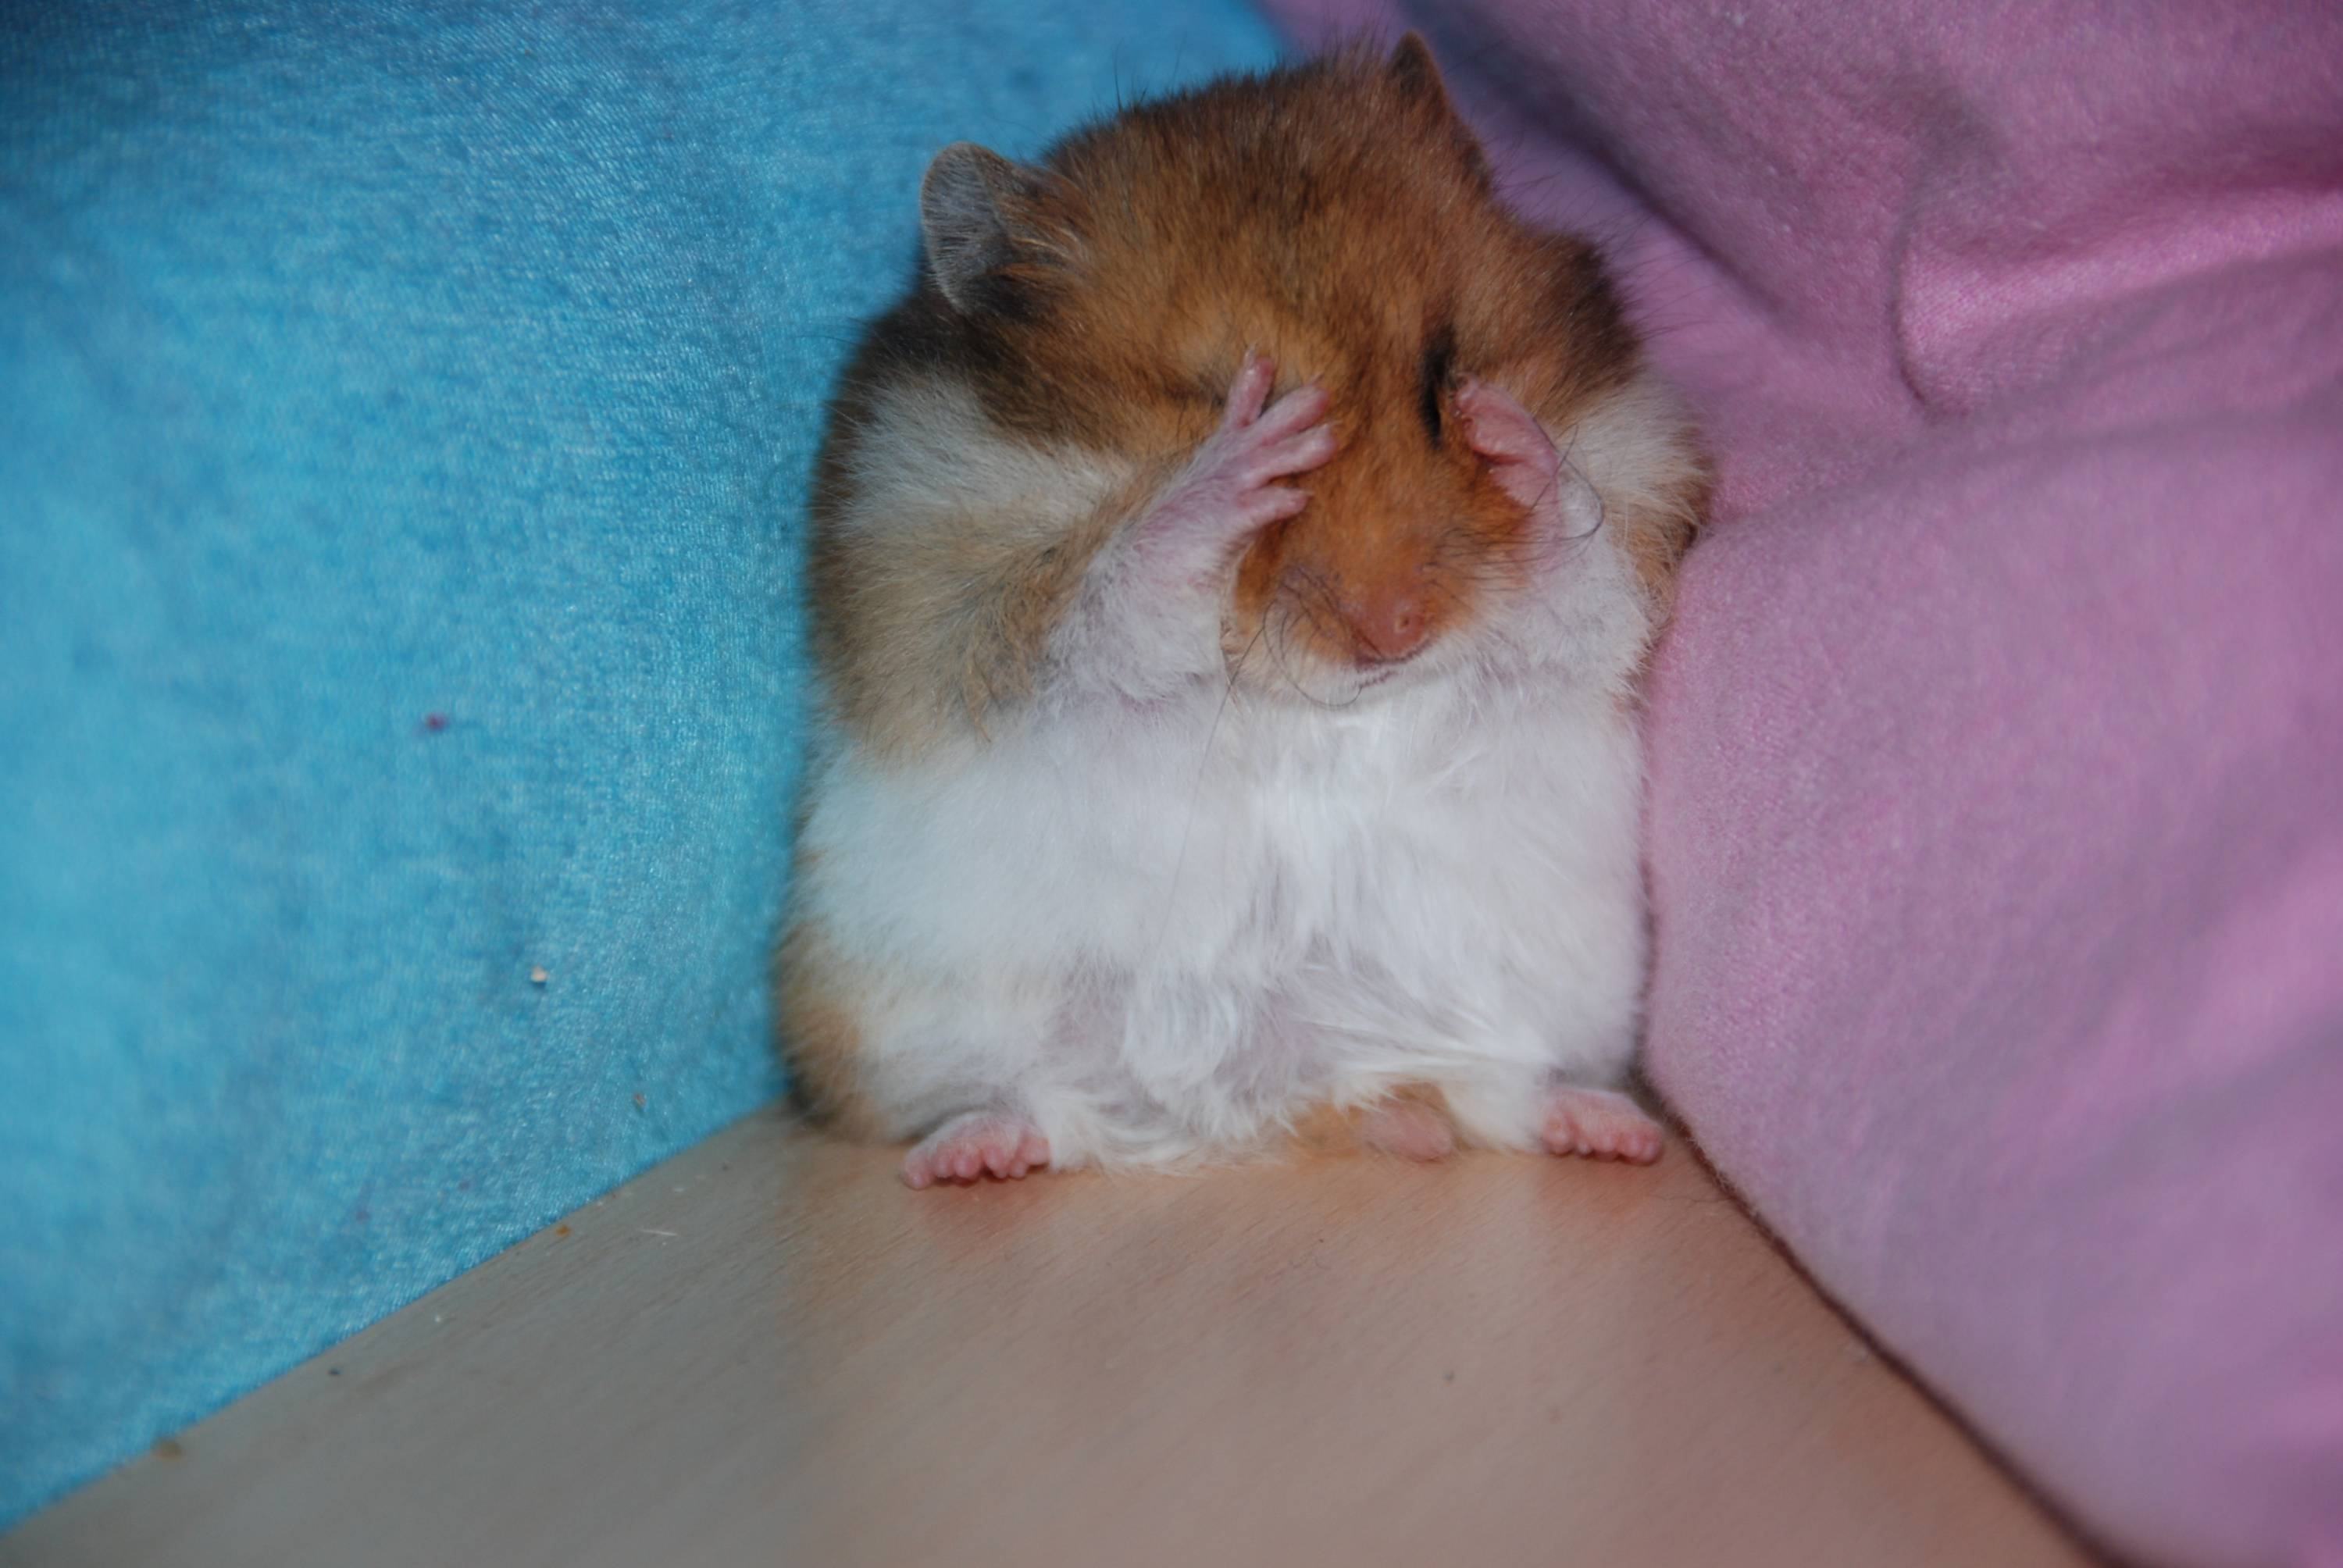 Sad hamster violin hamster. Плачущий хомяк. Обиженный хомяк. Грустный хомяк. Хомячок плачет.